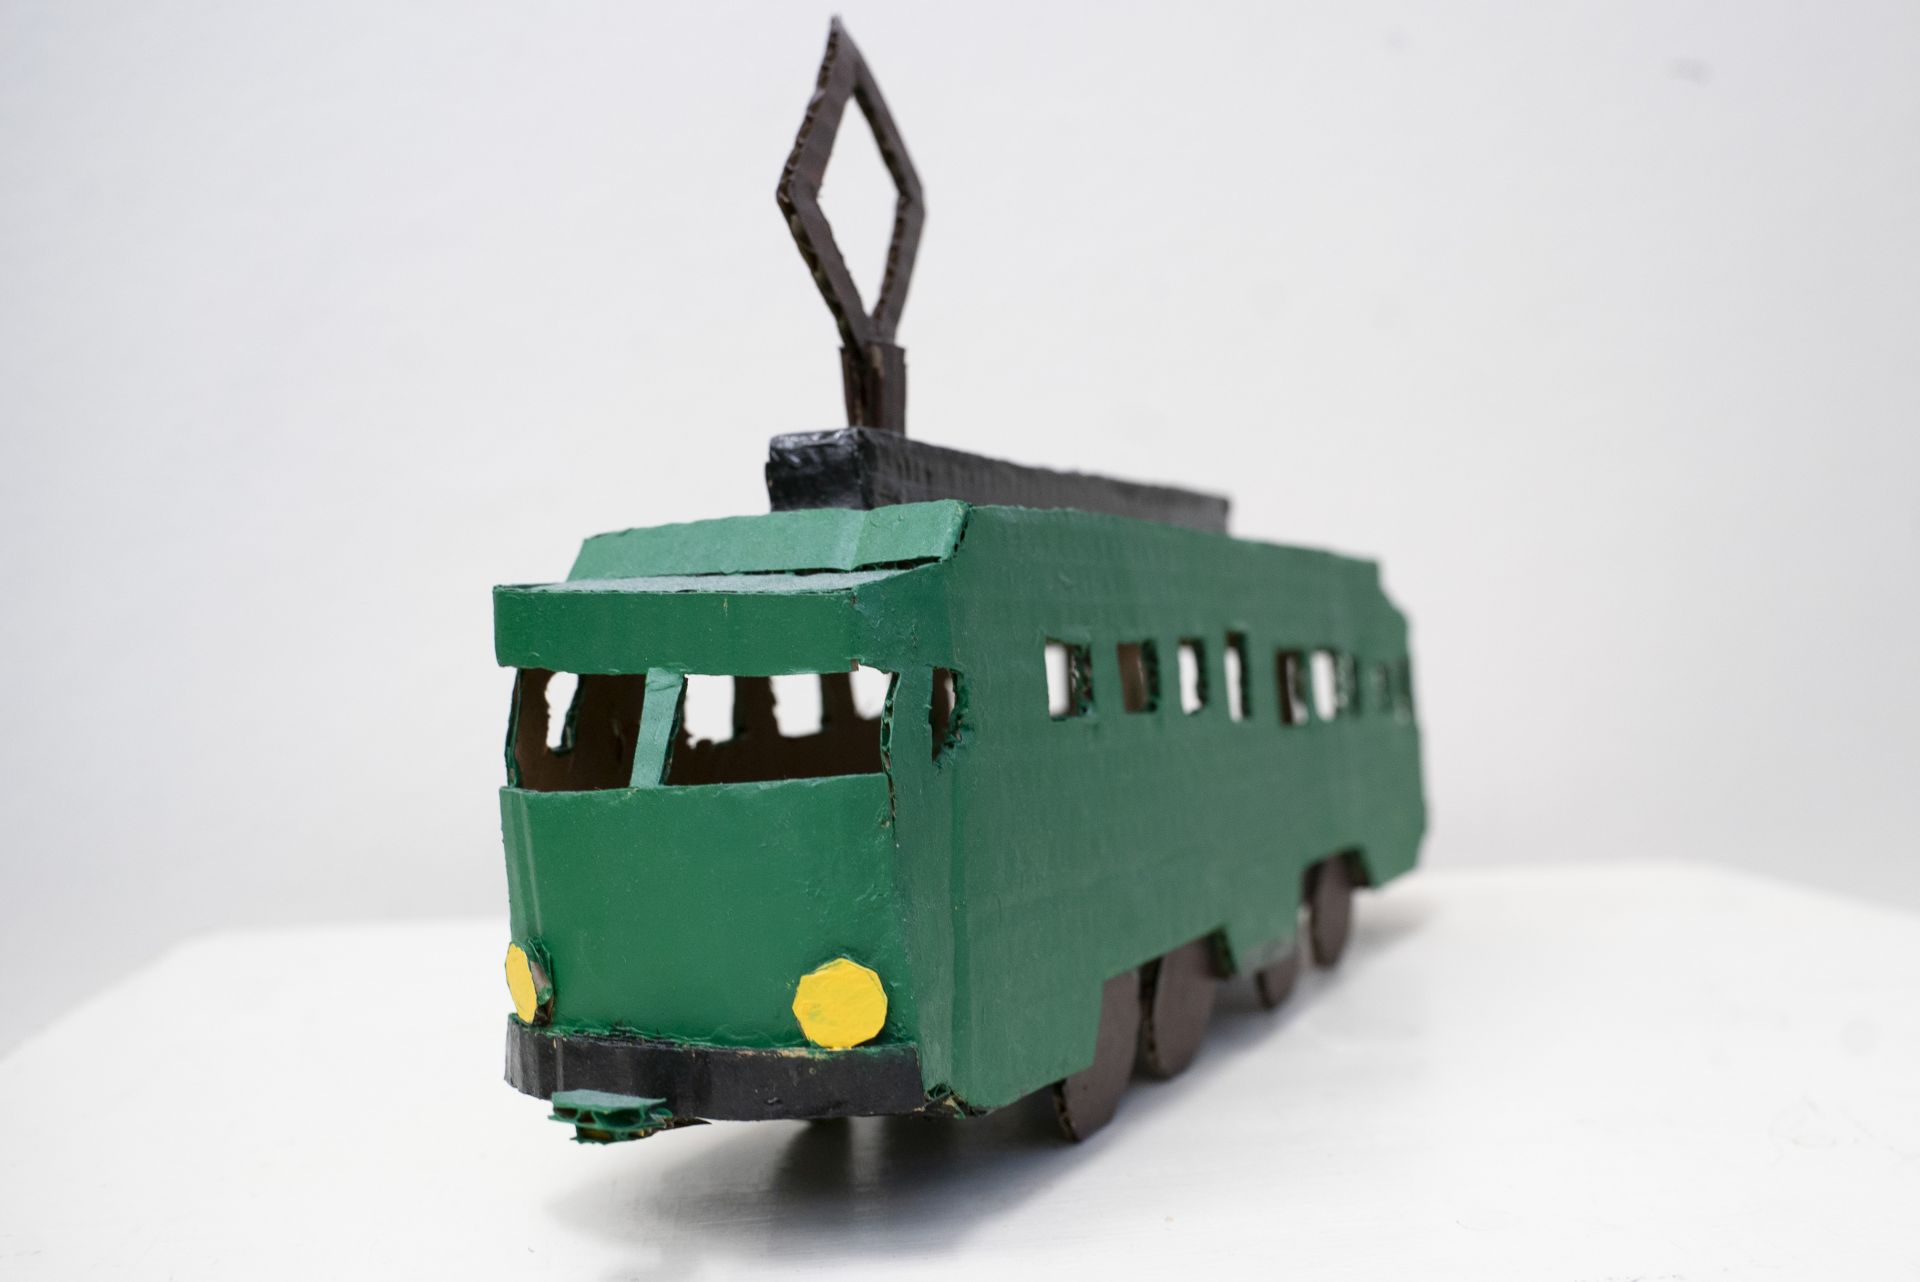 Pienoismalli vanhasta Helsingin raitiovaunusta. Pienoismalli on tehty pahvista ja maalattu vihreäksi.